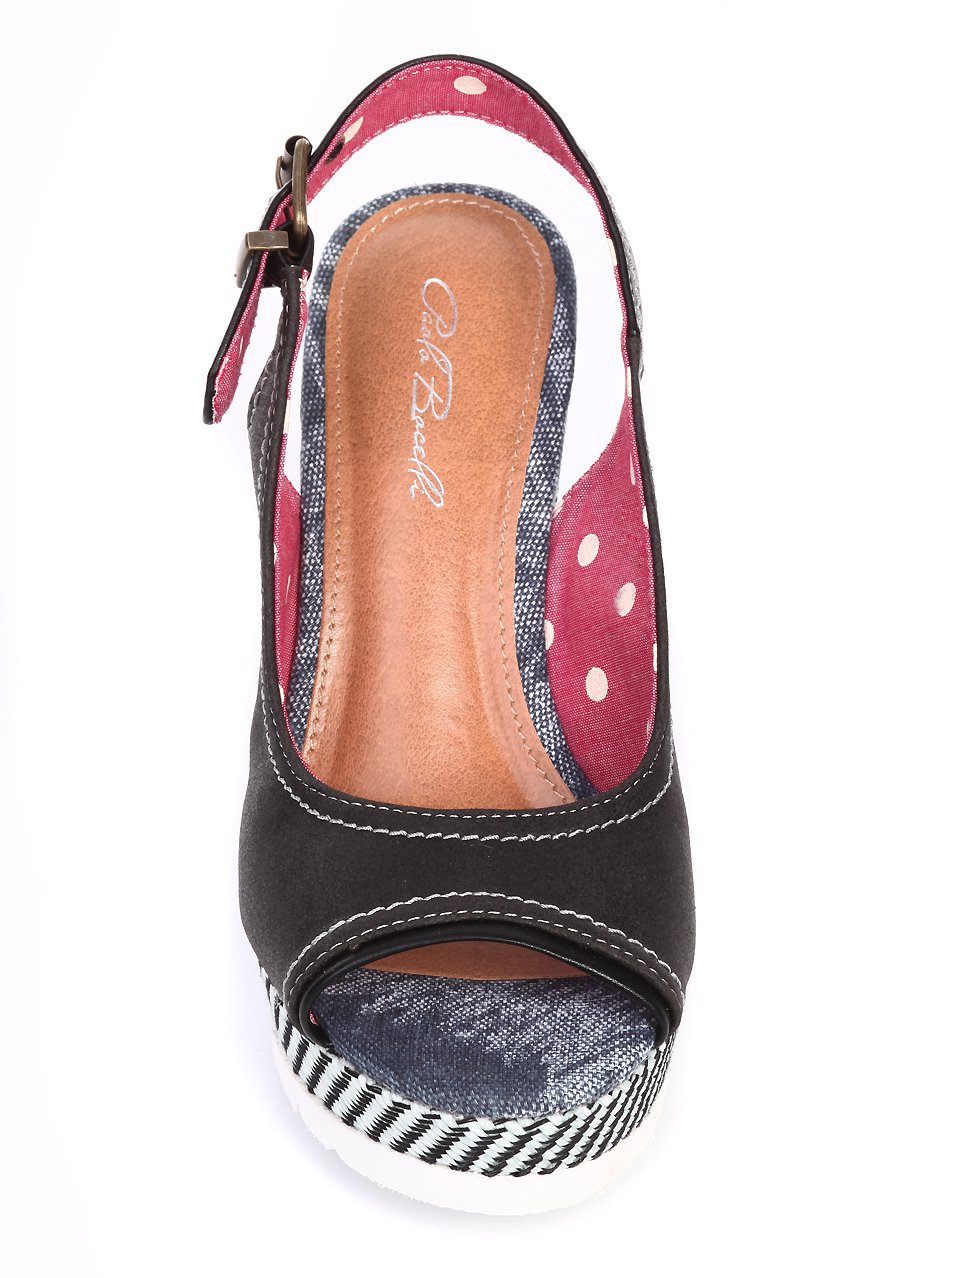 Ежедневни дамски сандали на платформа в черно 4B-17243 black